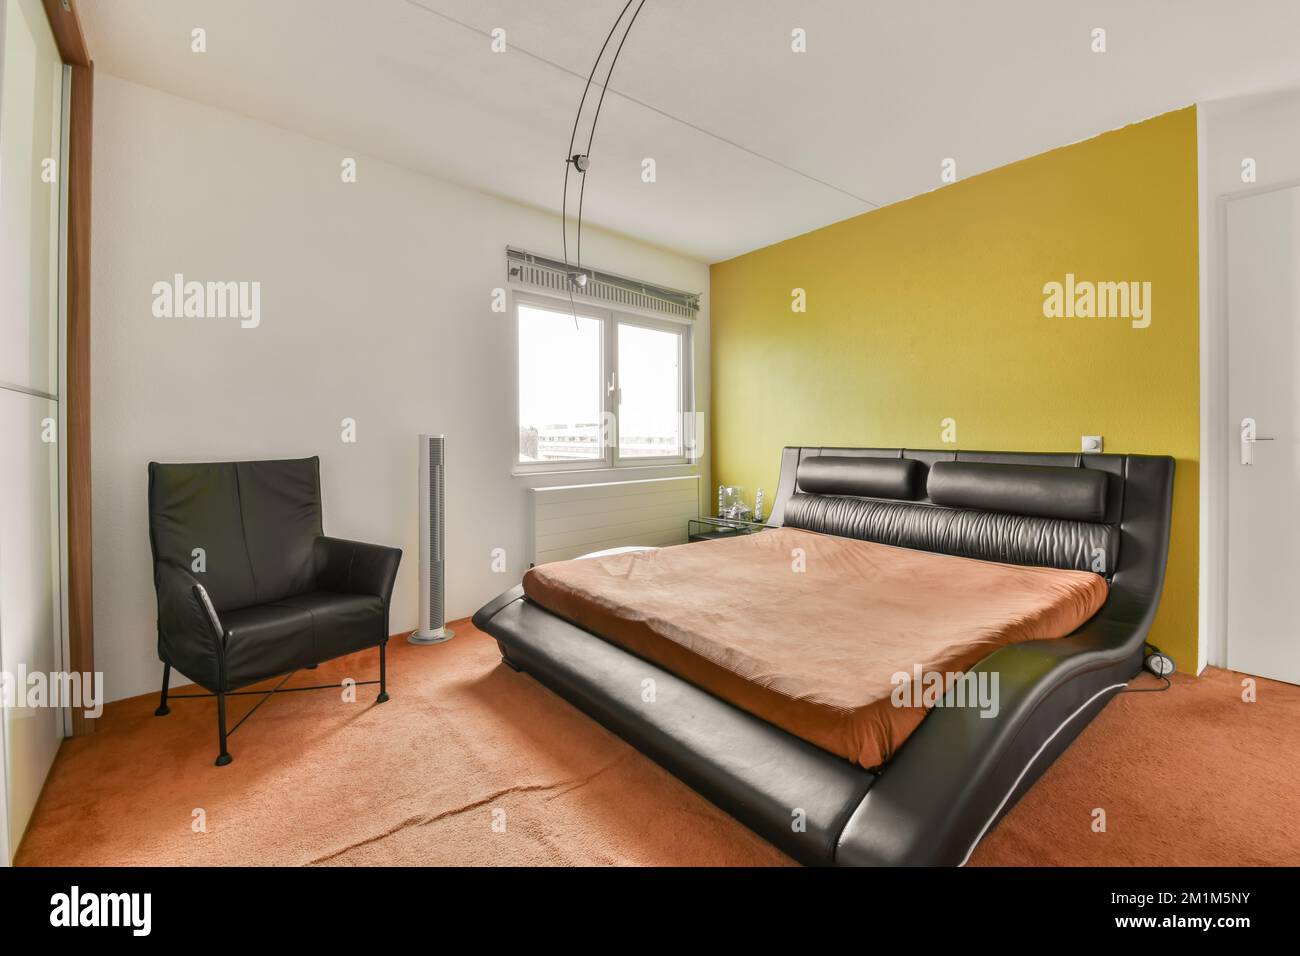 Ein Schlafzimmer mit einem orangefarbenen Bett und schwarzem Ledersessel im Zimmer ist hellgelbe Wände, weiße Verzierungen um das Fenster herum Stockfoto